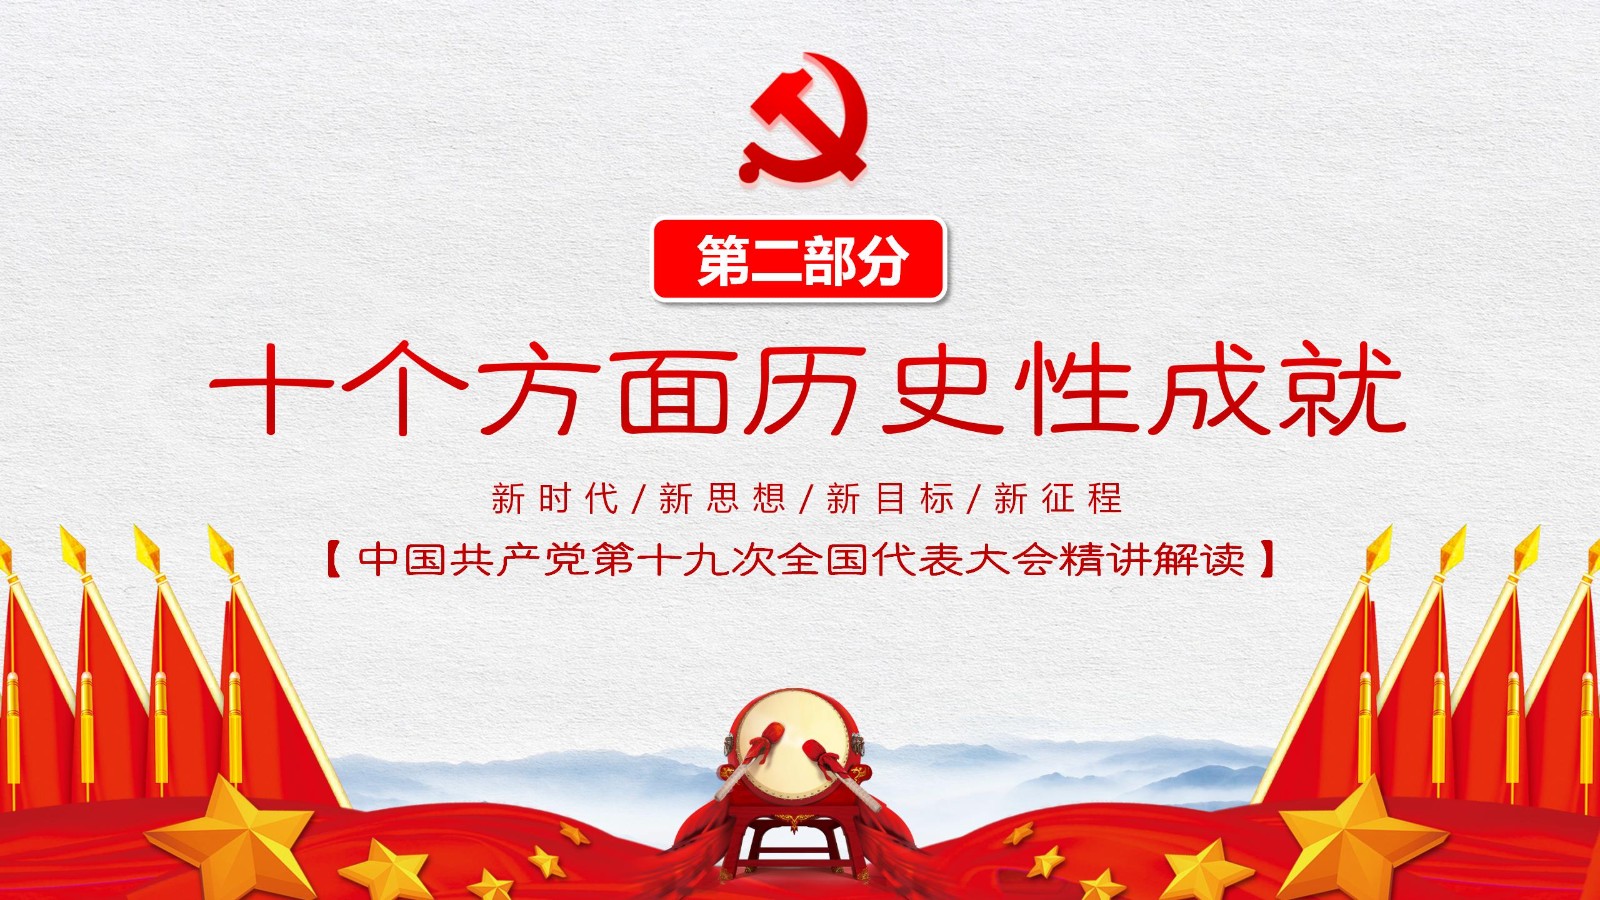 中国特色社会主义旗帜模板9